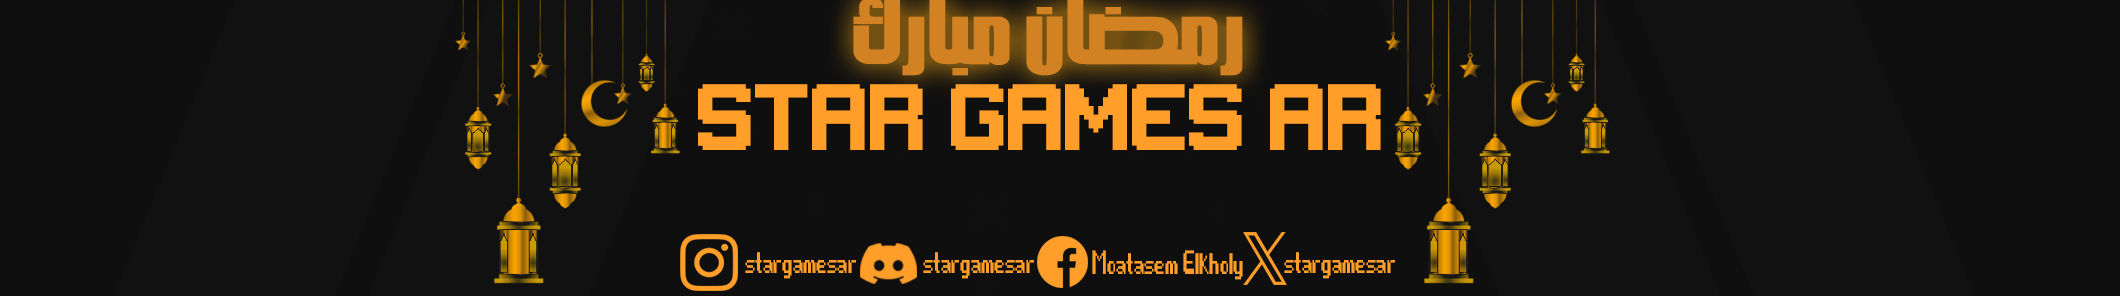 Profil-Banner von Star Games AR